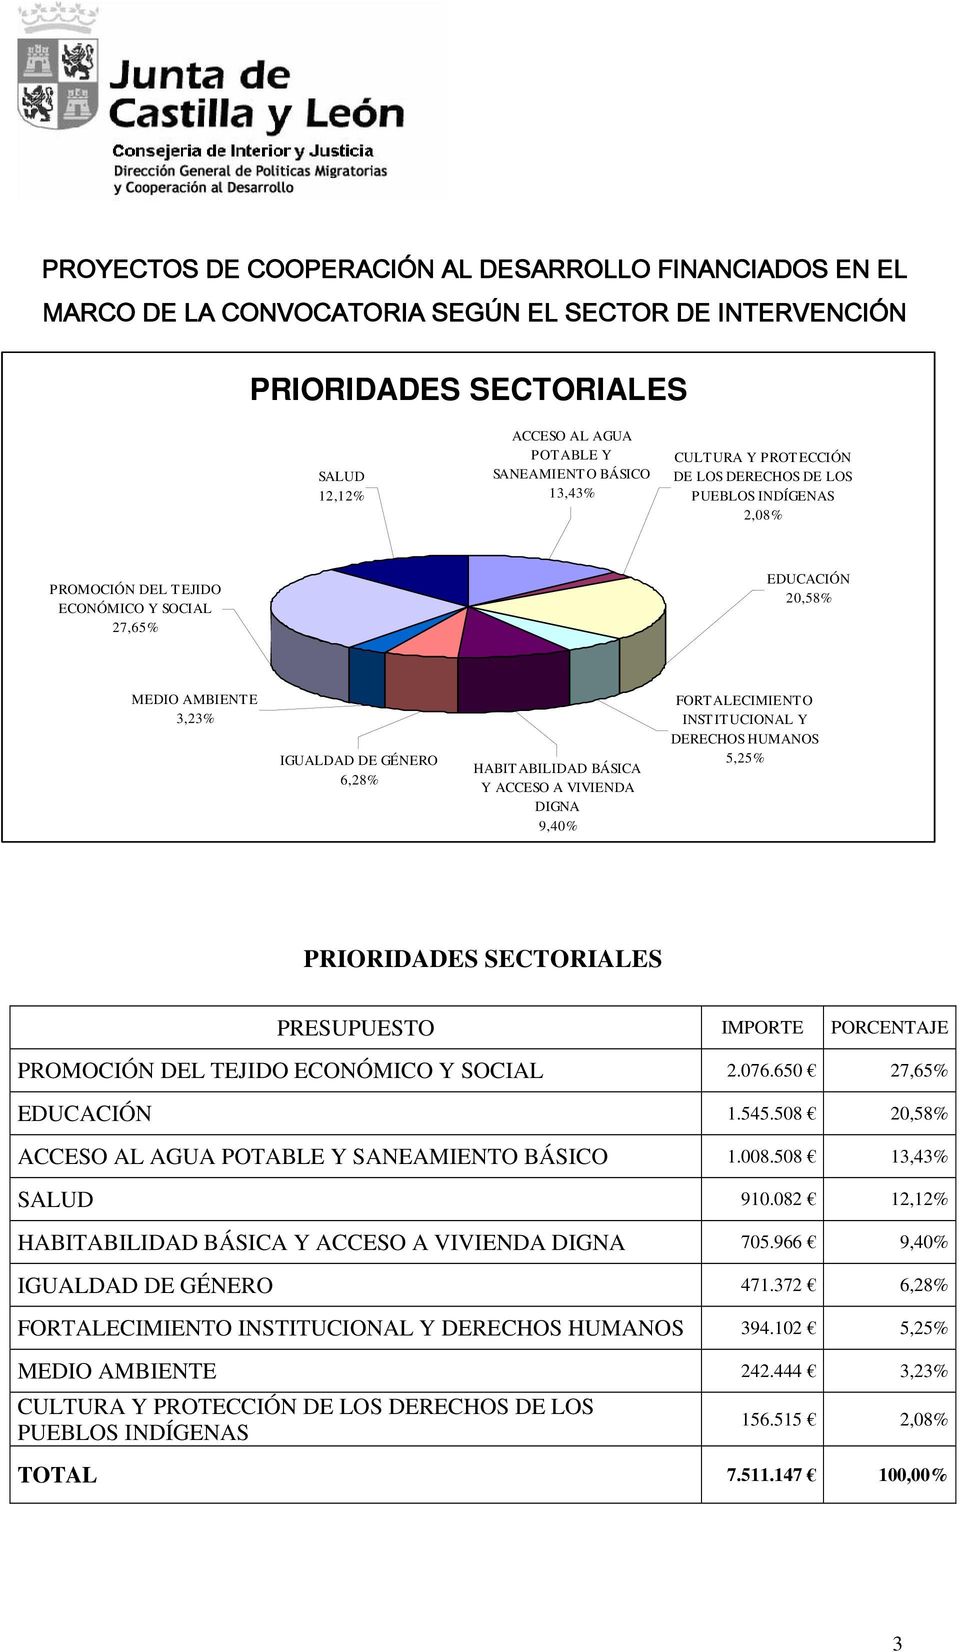 BÁSICA Y ACCESO A VIVIENDA DIGNA 9,40% FORTALECIMIENTO INSTITUCIONAL Y DERECHOS HUMANOS 5,25% PRIORIDADES SECTORIALES PRESUPUESTO IMPORTE PORCENTAJE PROMOCIÓN DEL TEJIDO ECONÓMICO Y SOCIAL 2.076.